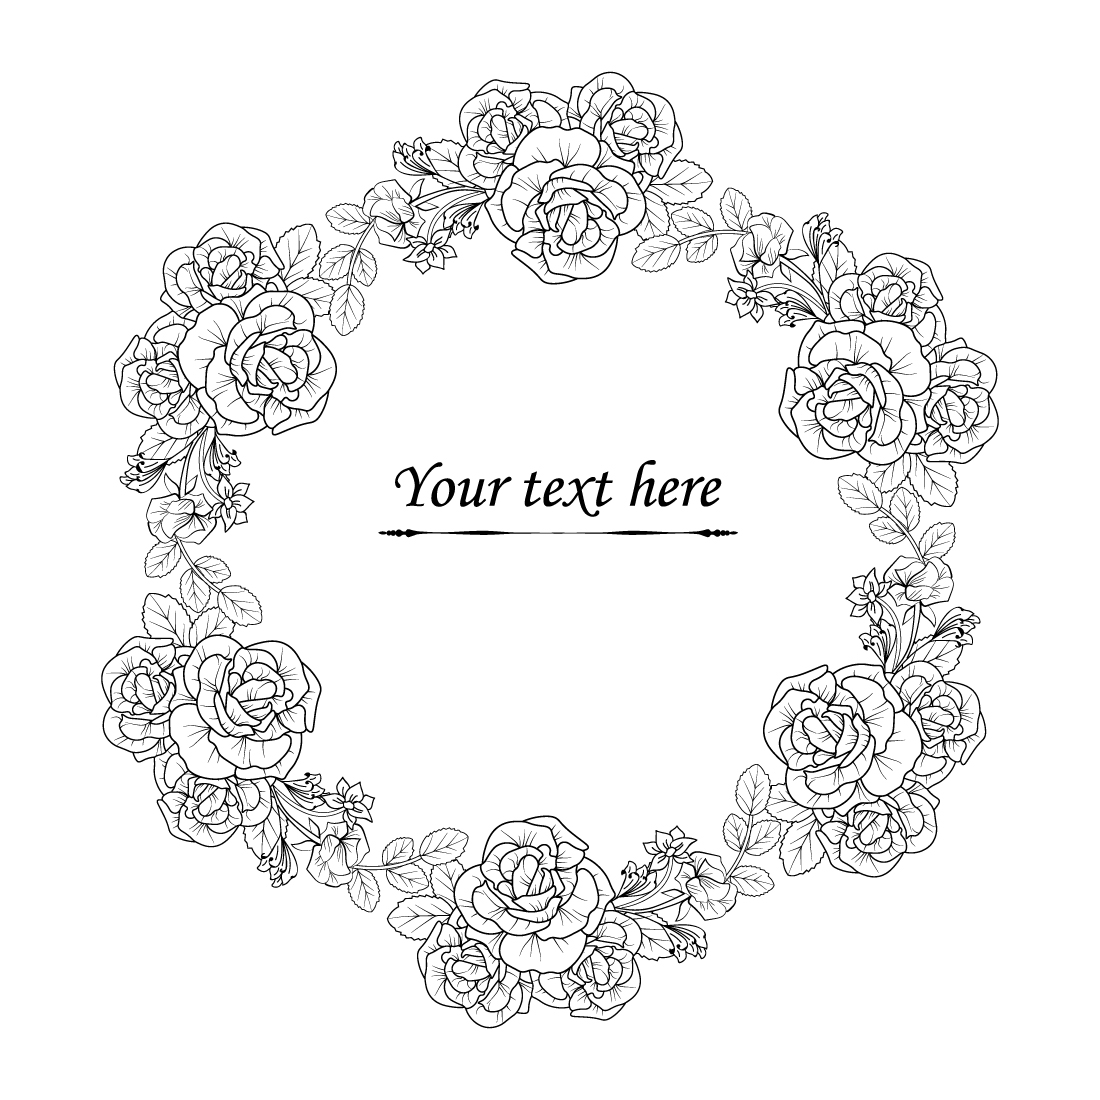 Rose flower border design rose border and frame design, rose border sve paper cut for weddings, preview image.